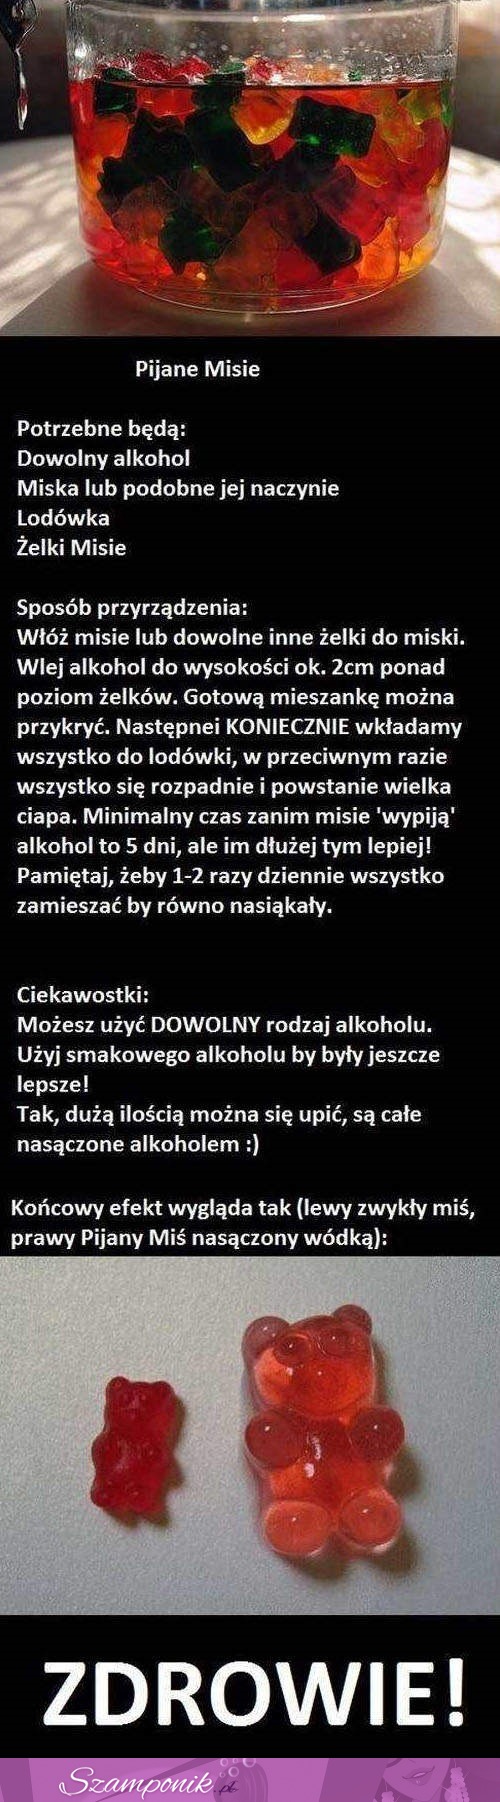 Pijane Misie, czyli mega przepis na alkoholowe żelki :D Spróbuj je zrobić!